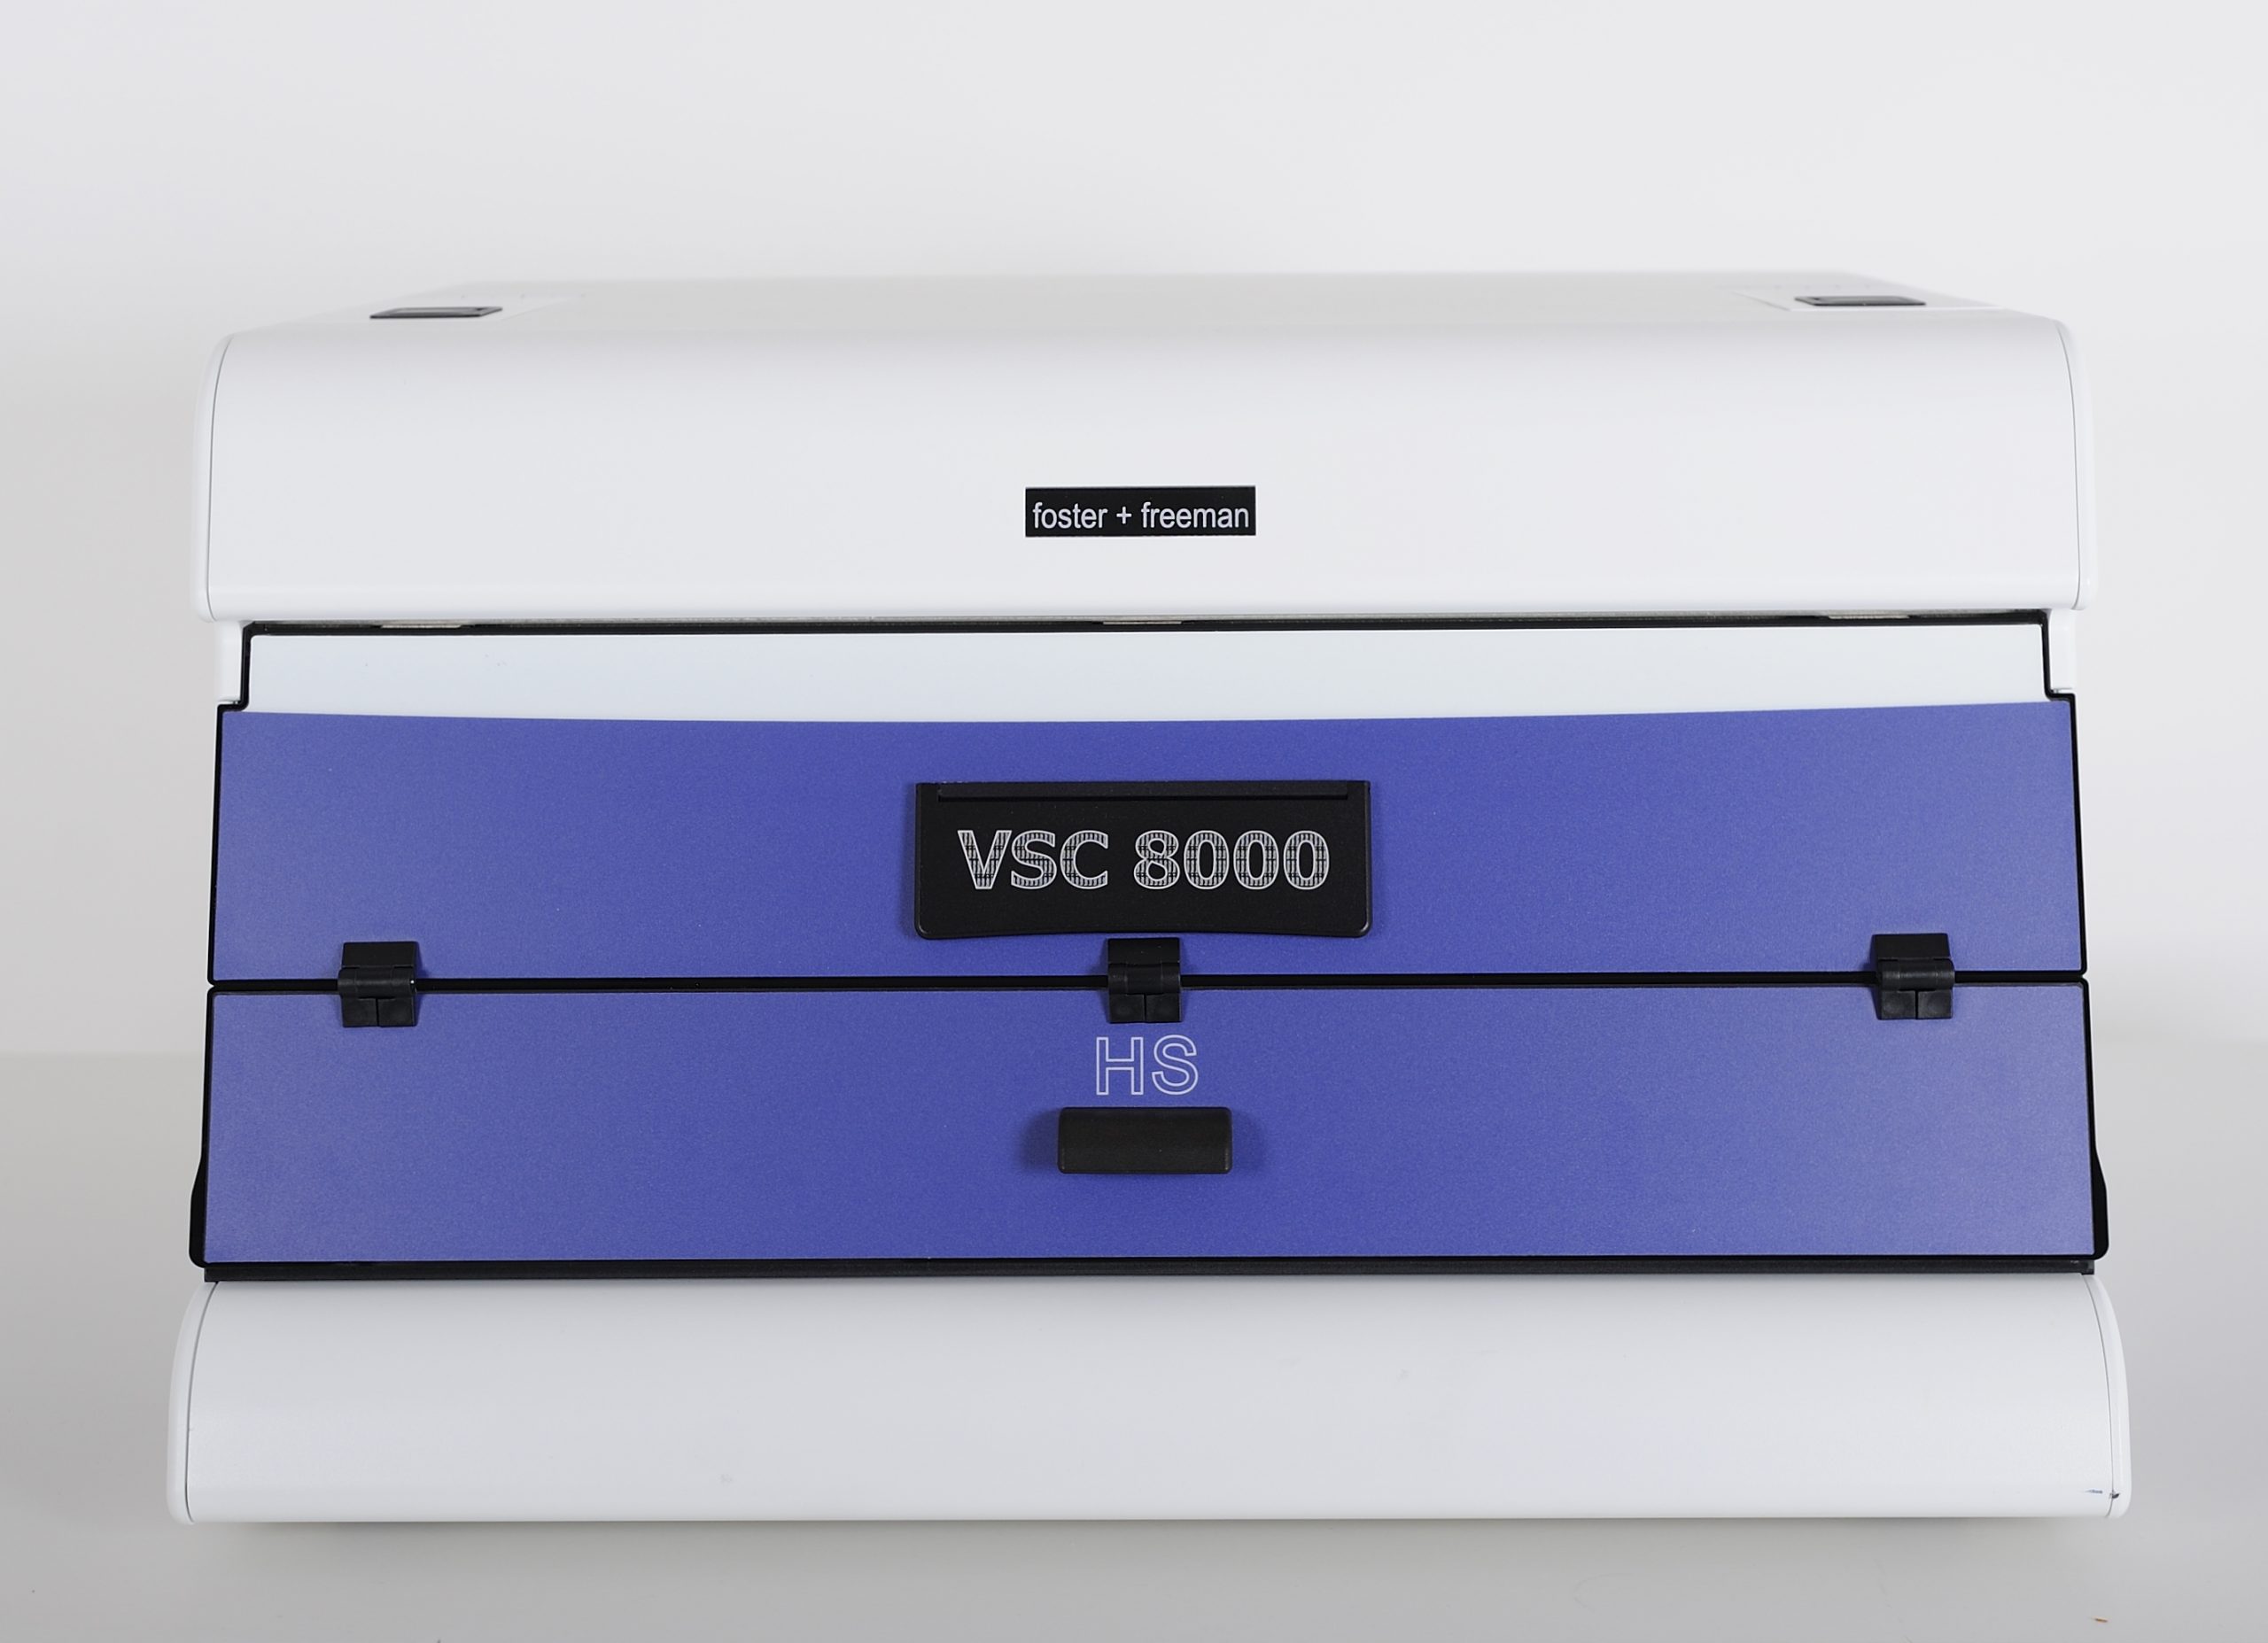 VSC®8000/HS